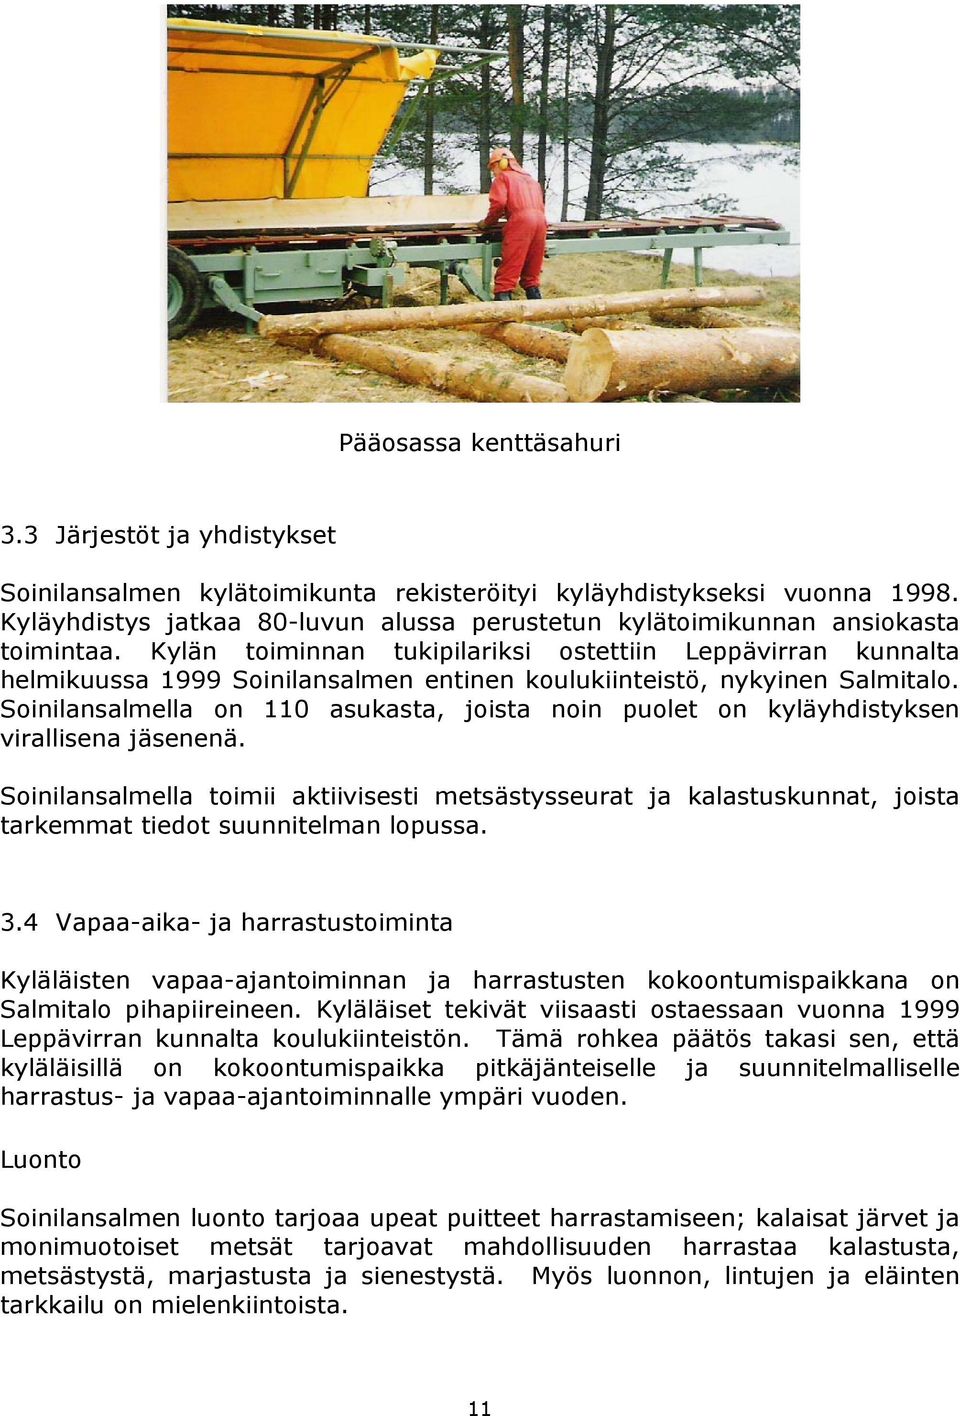 Kylän toiminnan tukipilariksi ostettiin Leppävirran kunnalta helmikuussa 1999 Soinilansalmen entinen koulukiinteistö, nykyinen Salmitalo.